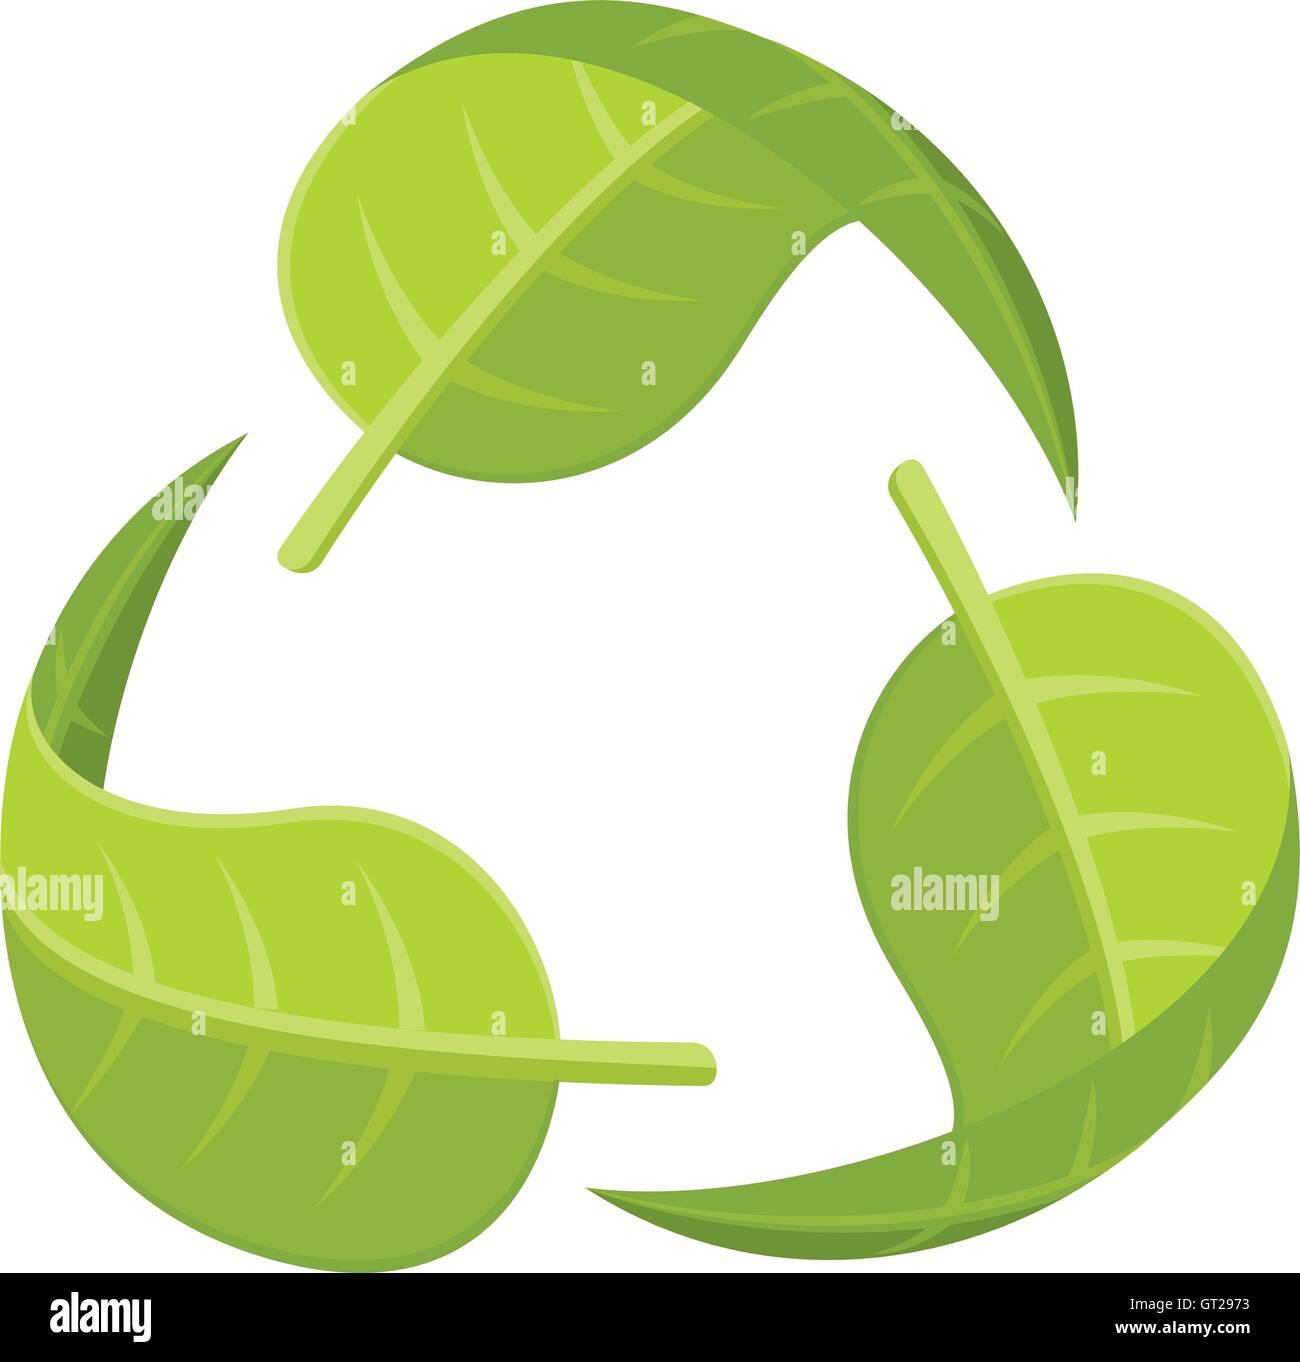 Foglie di logo di riciclo. Illustrazione Vettoriale di tre foglie verdi costituenti il logo di riciclo. Illustrazione Vettoriale